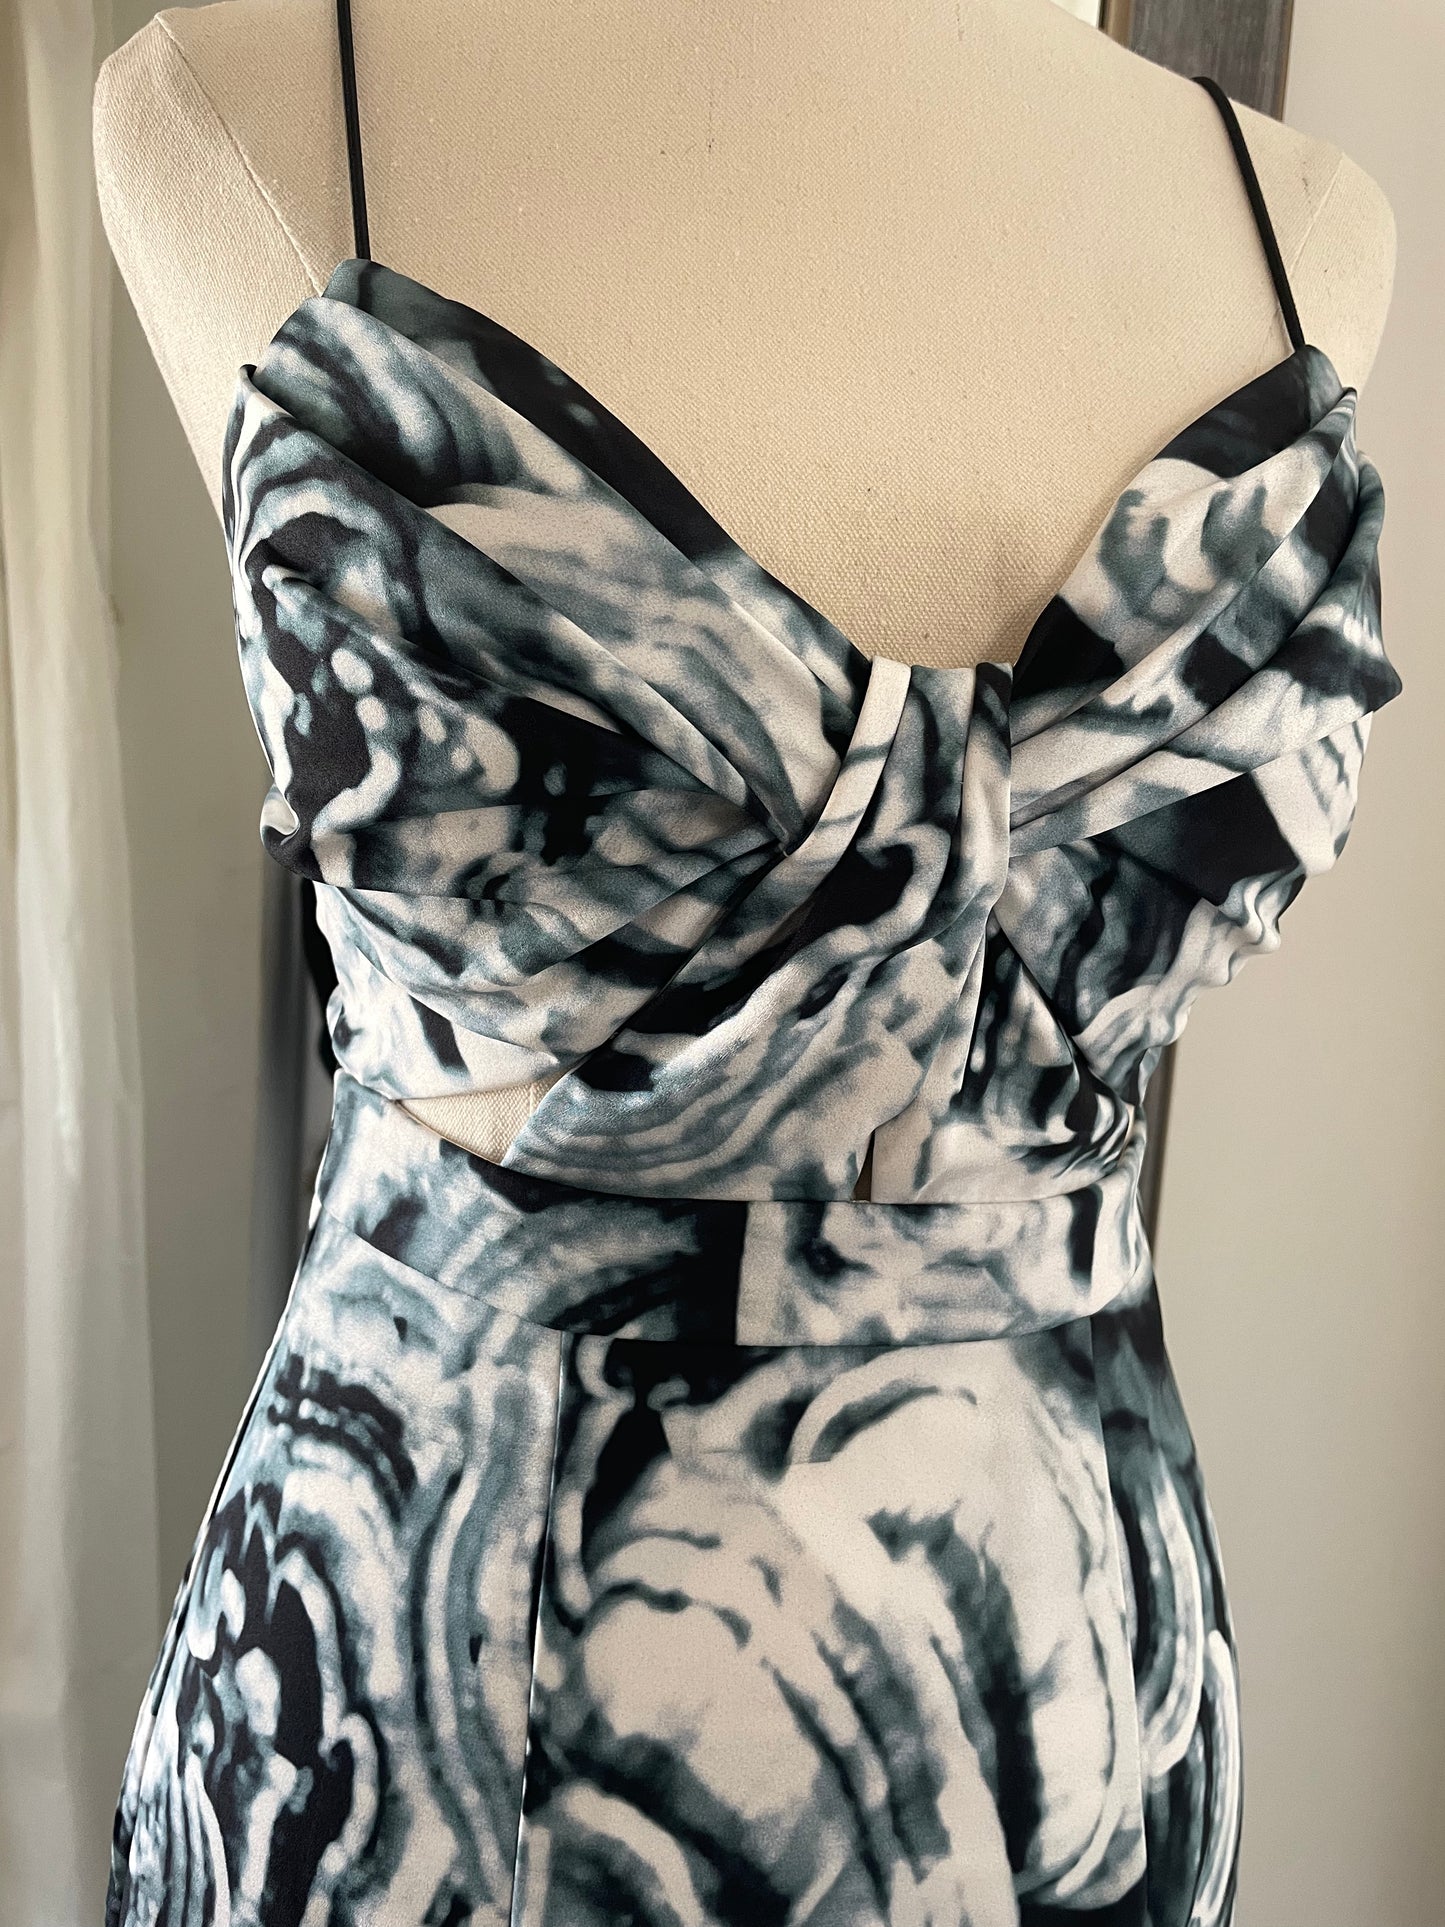 Swirl Dress by Sheike